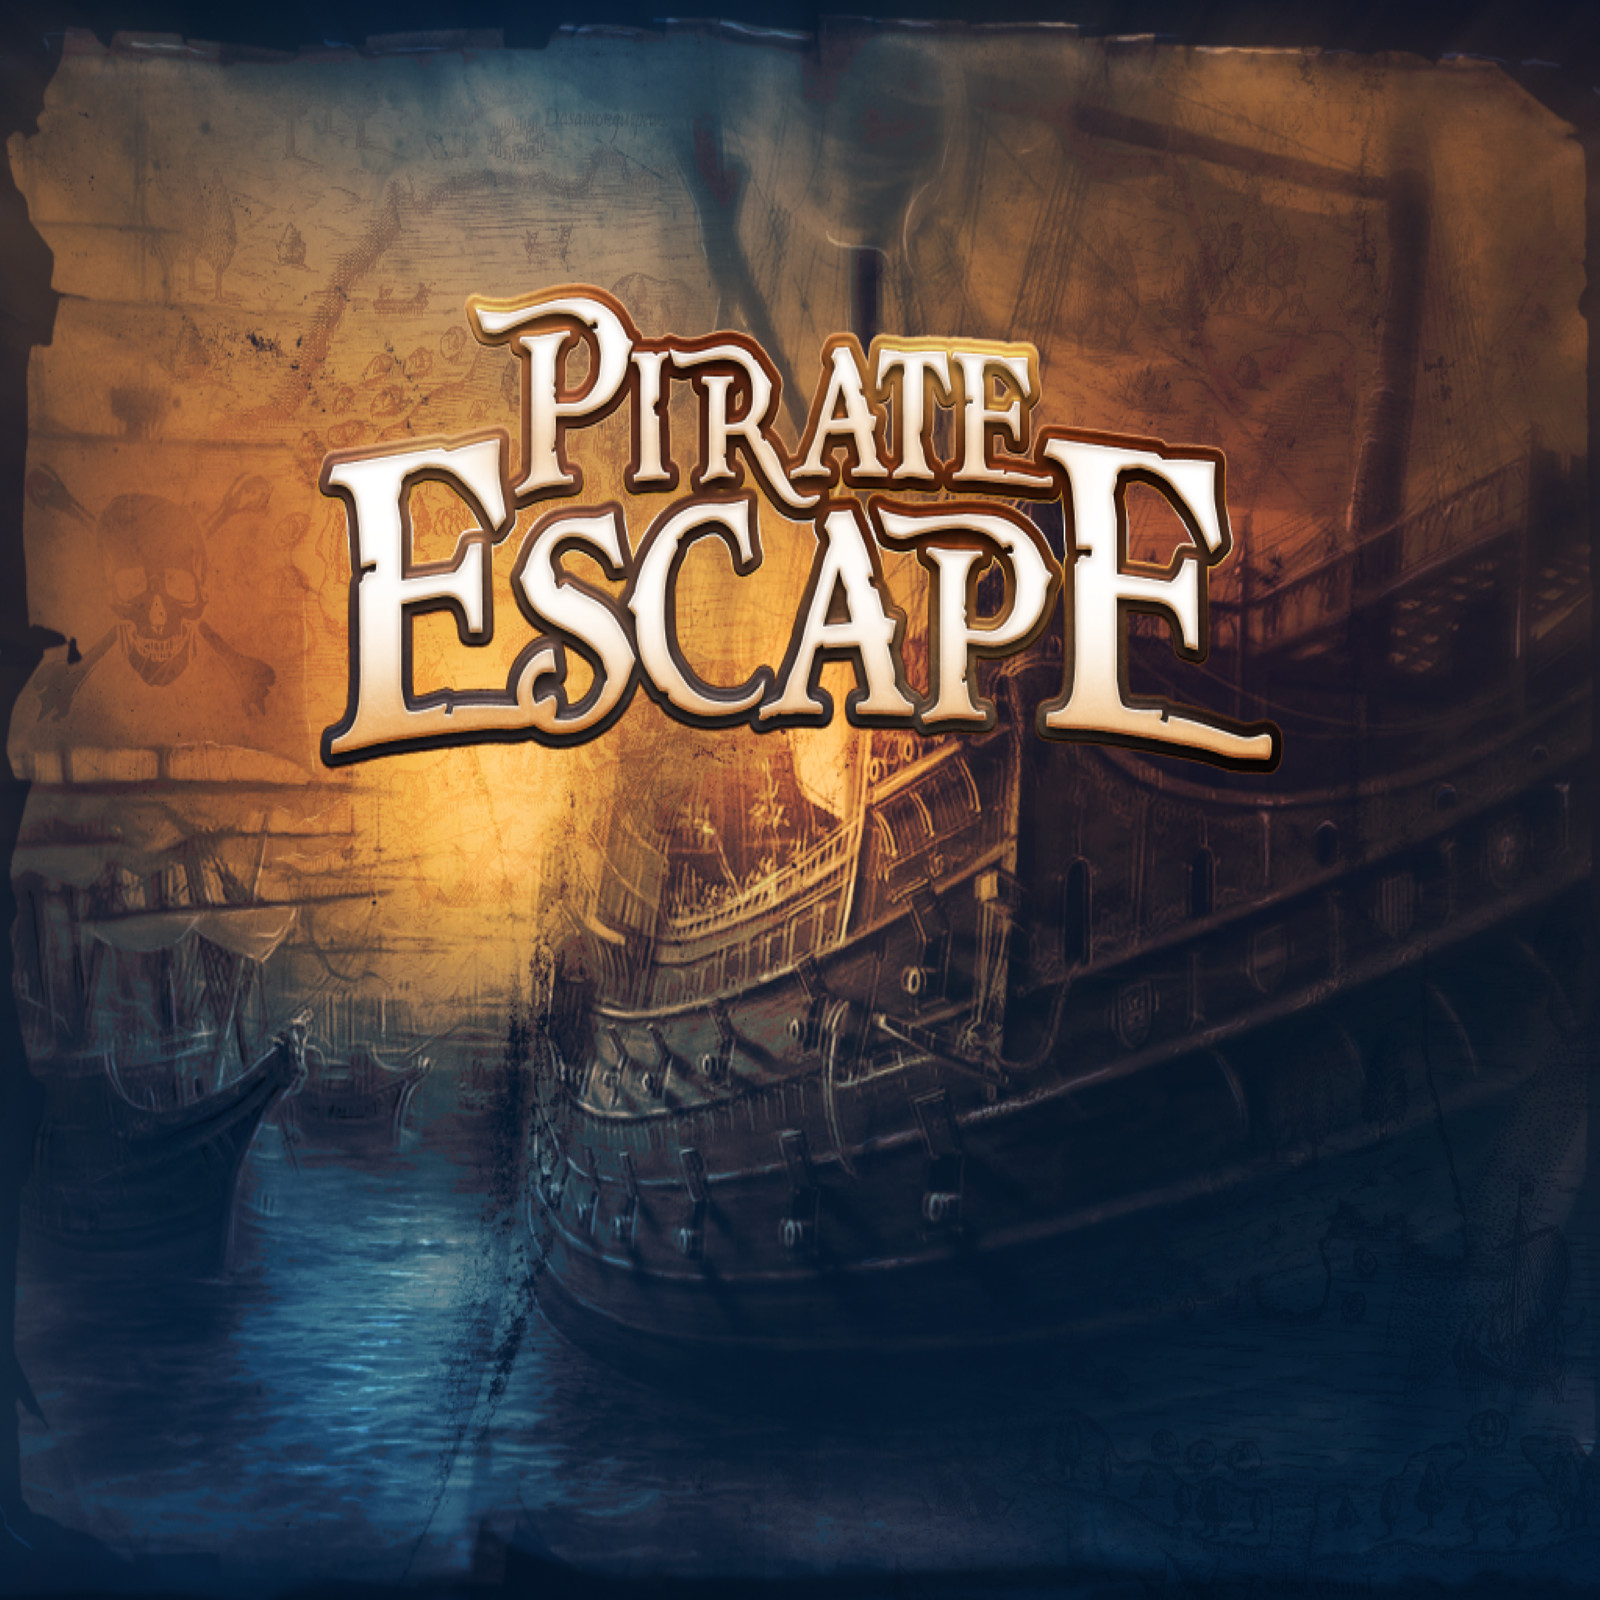 pirates puzzle escape room edgartown